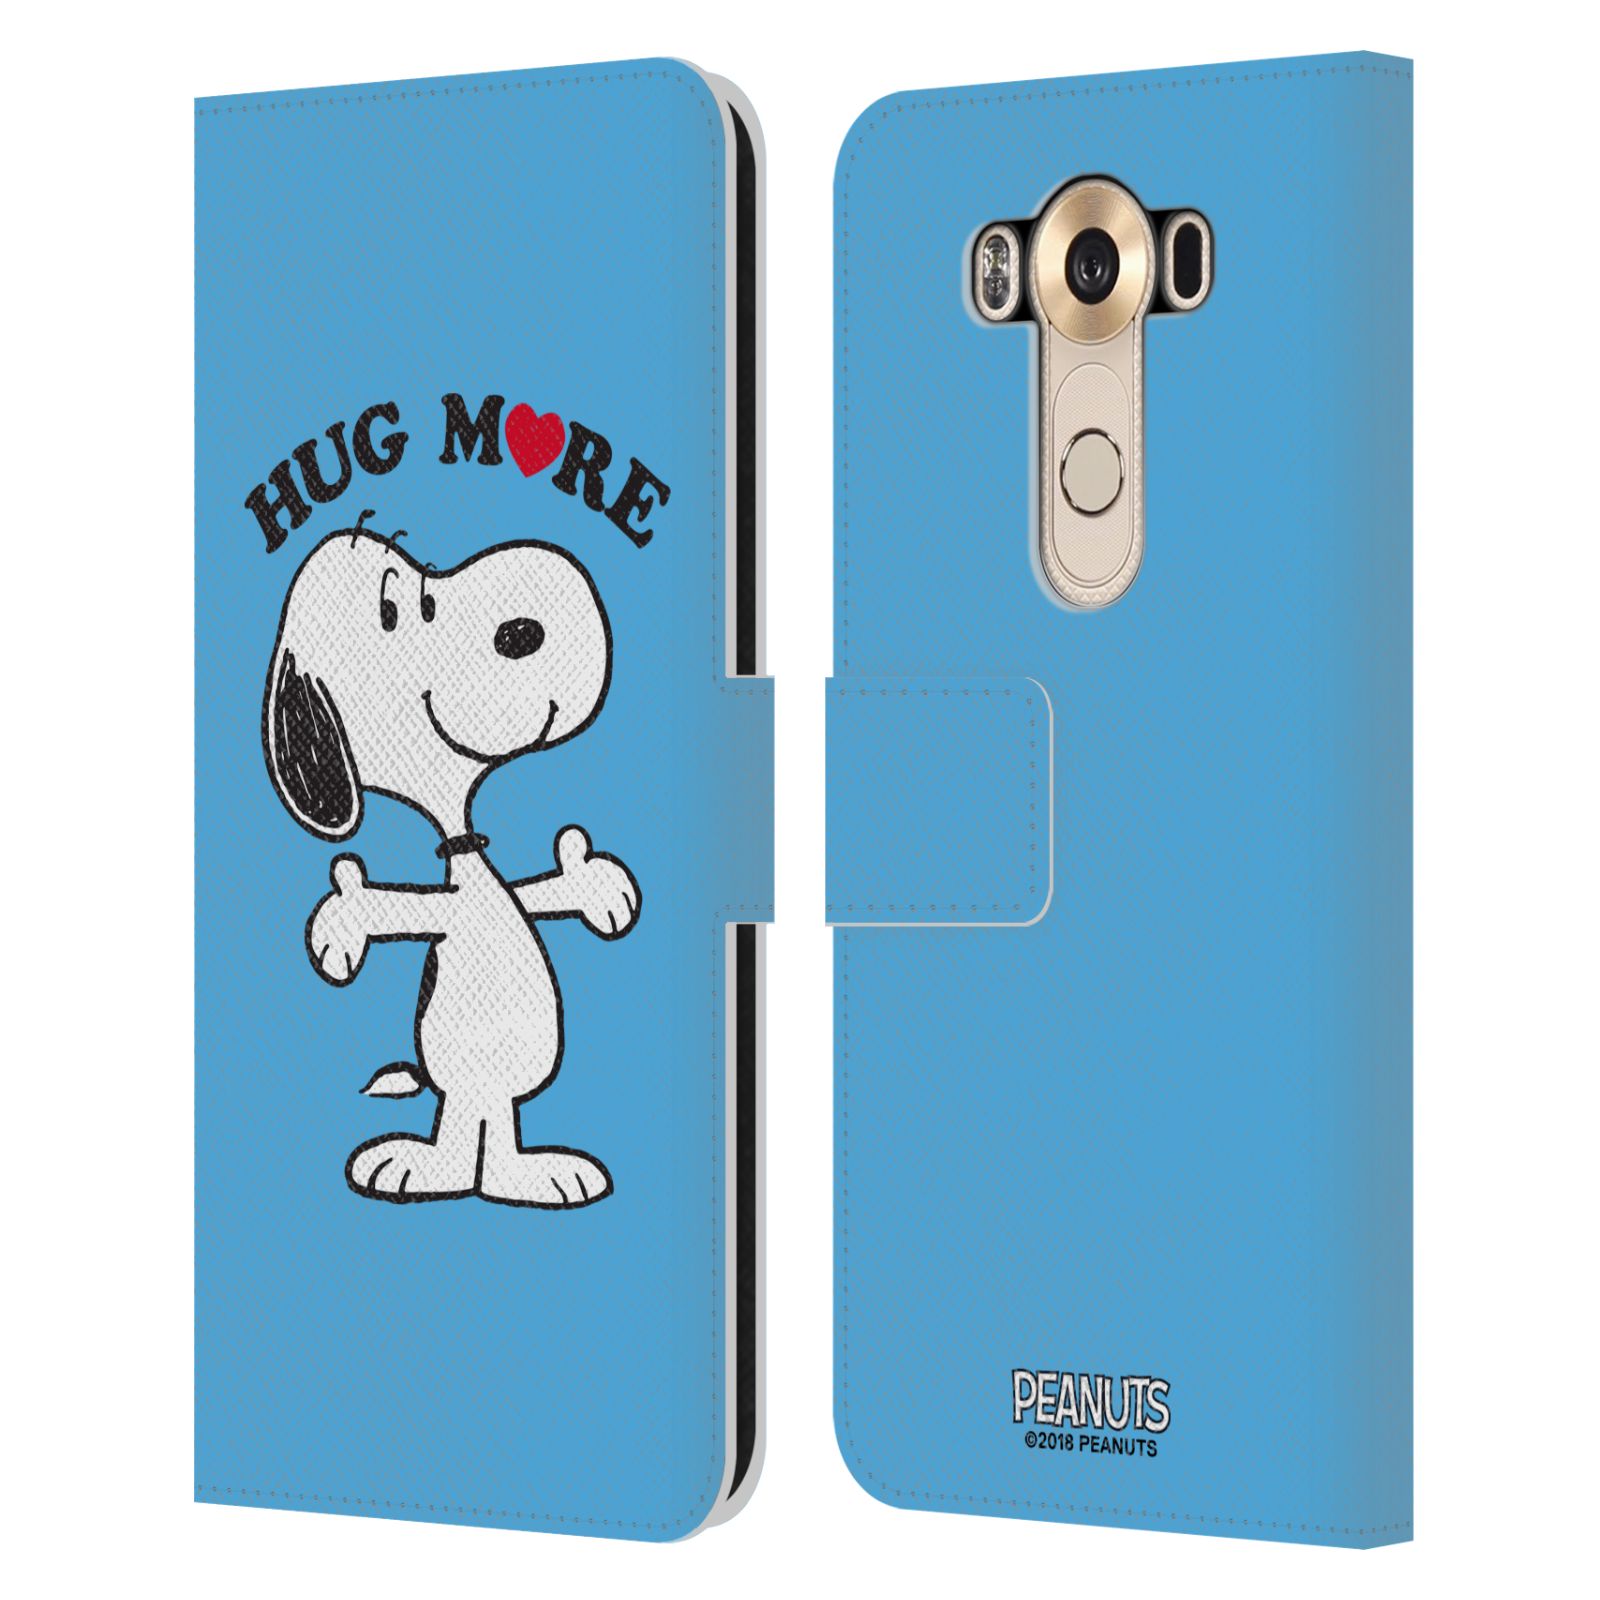 Pouzdro na mobil LG V10 - Head Case - Peanuts - pejsek snoopy světle modré objetí